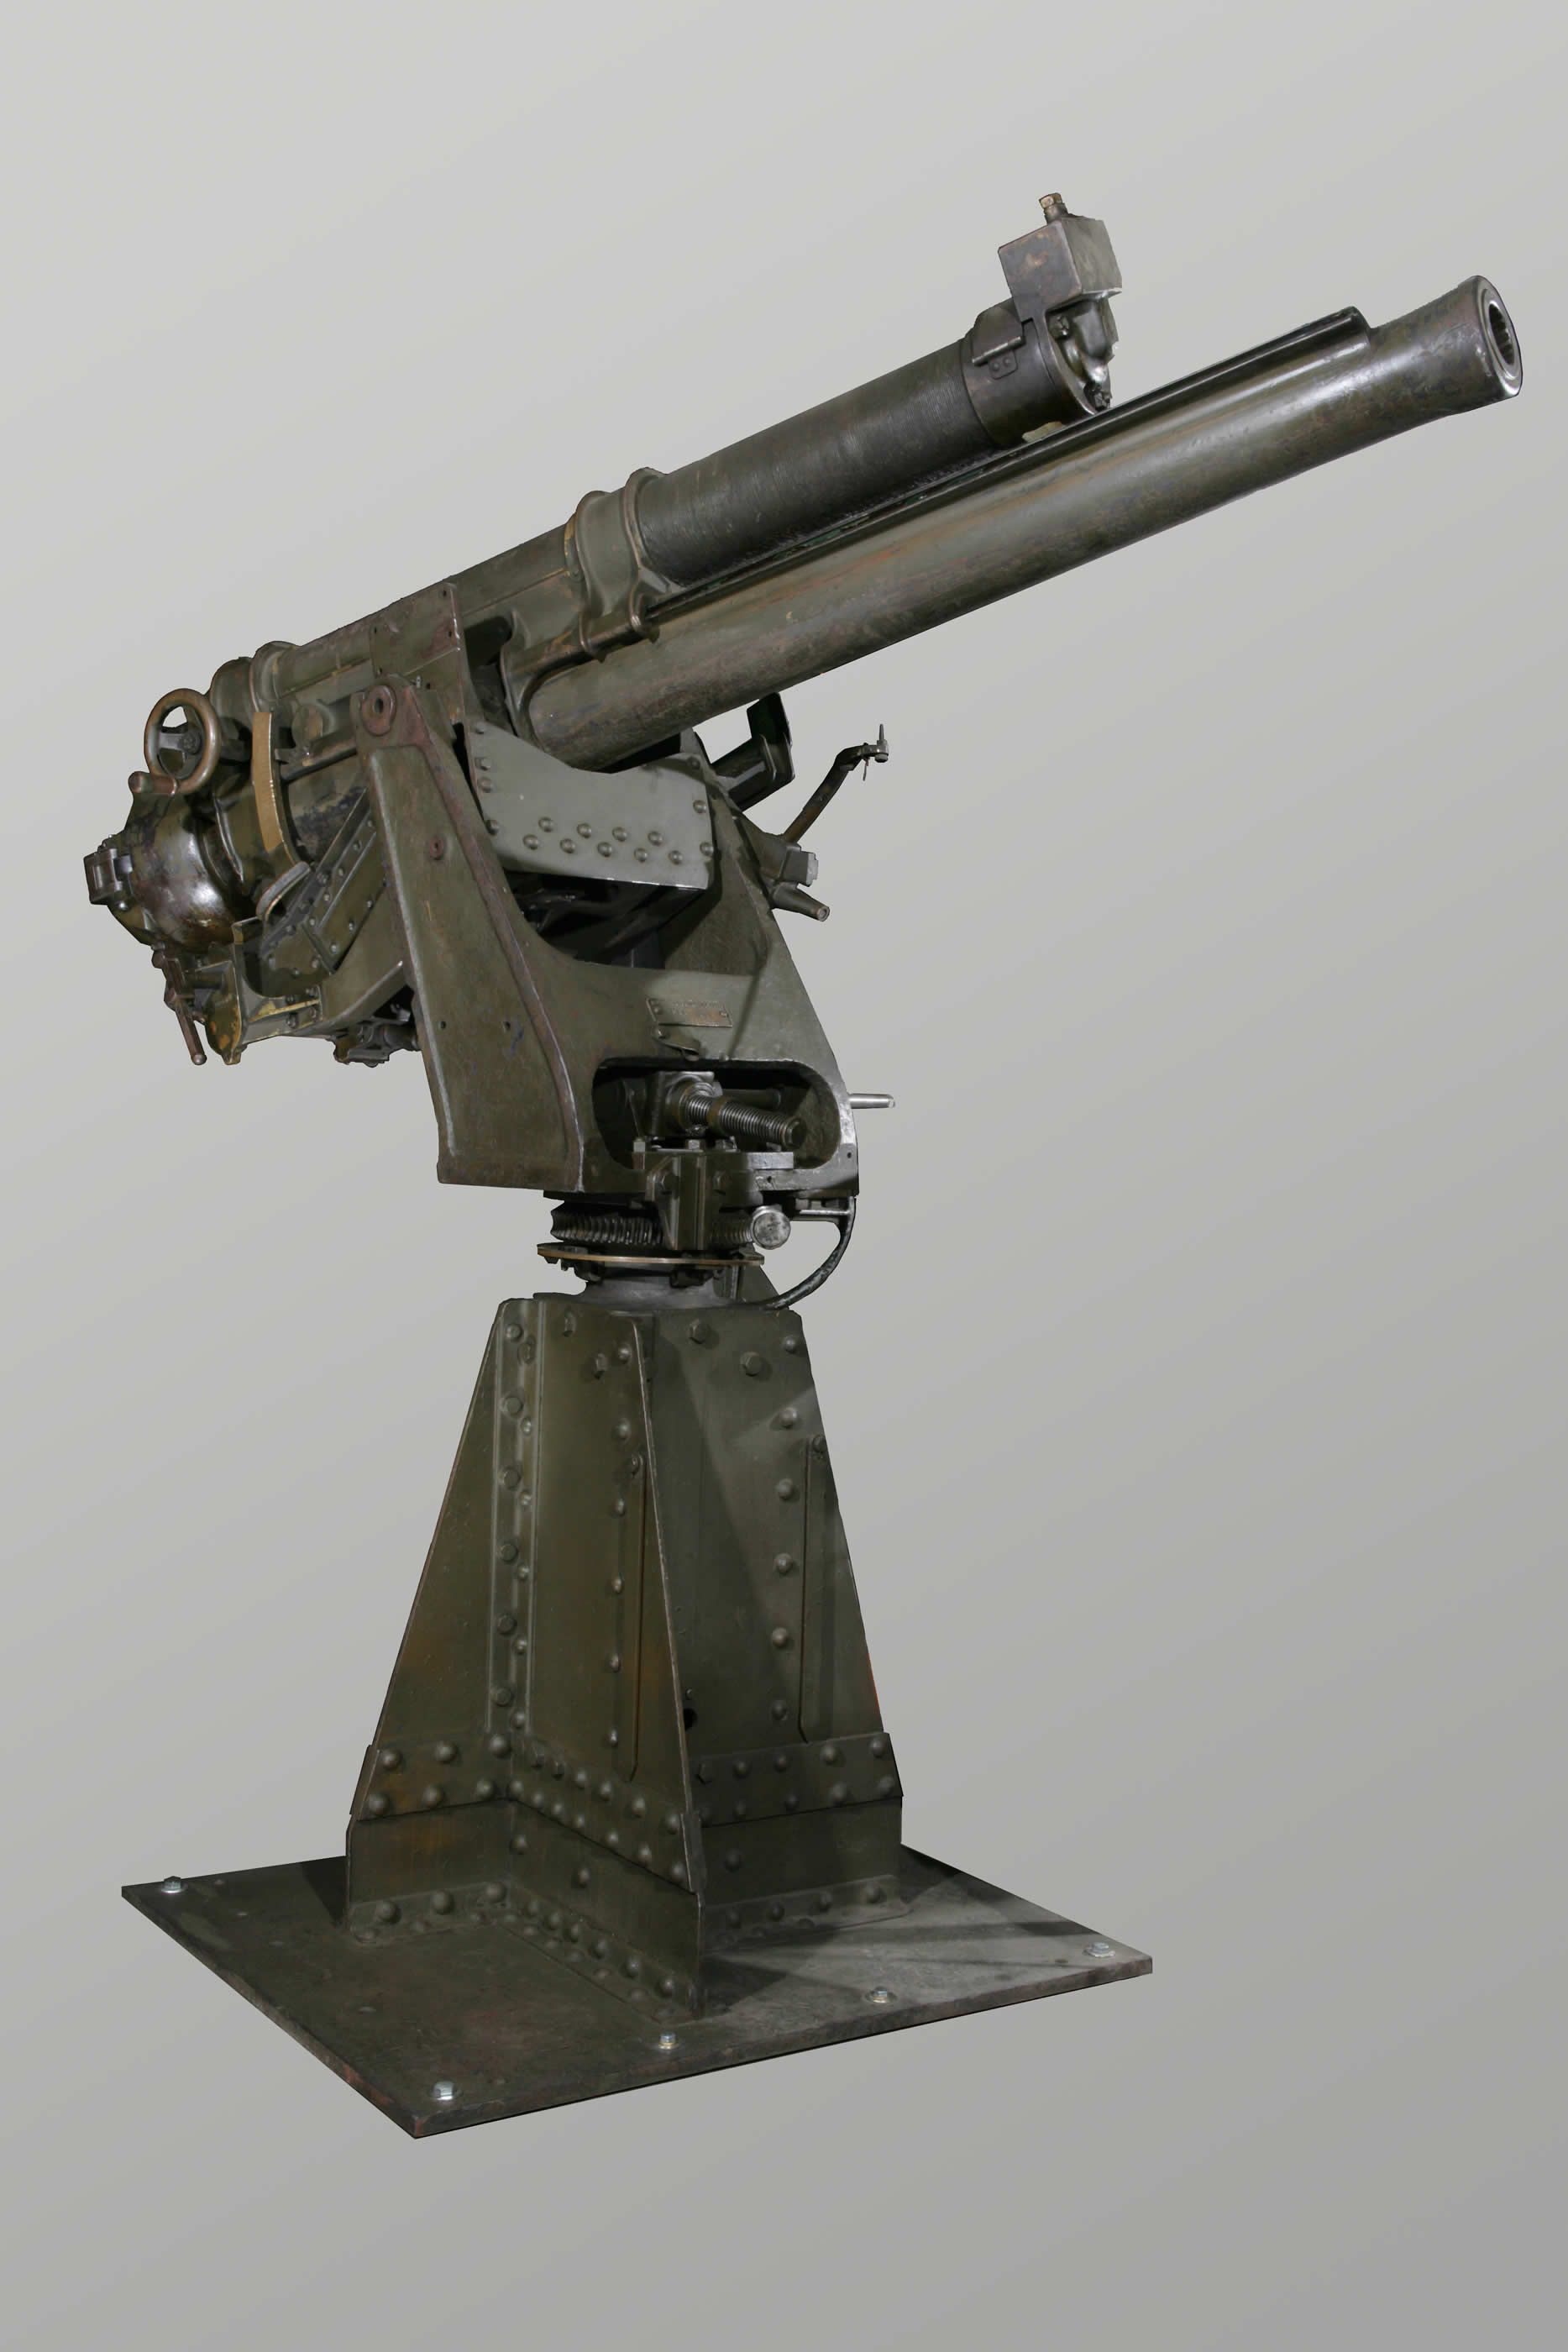 Anti-Aircraft Gun